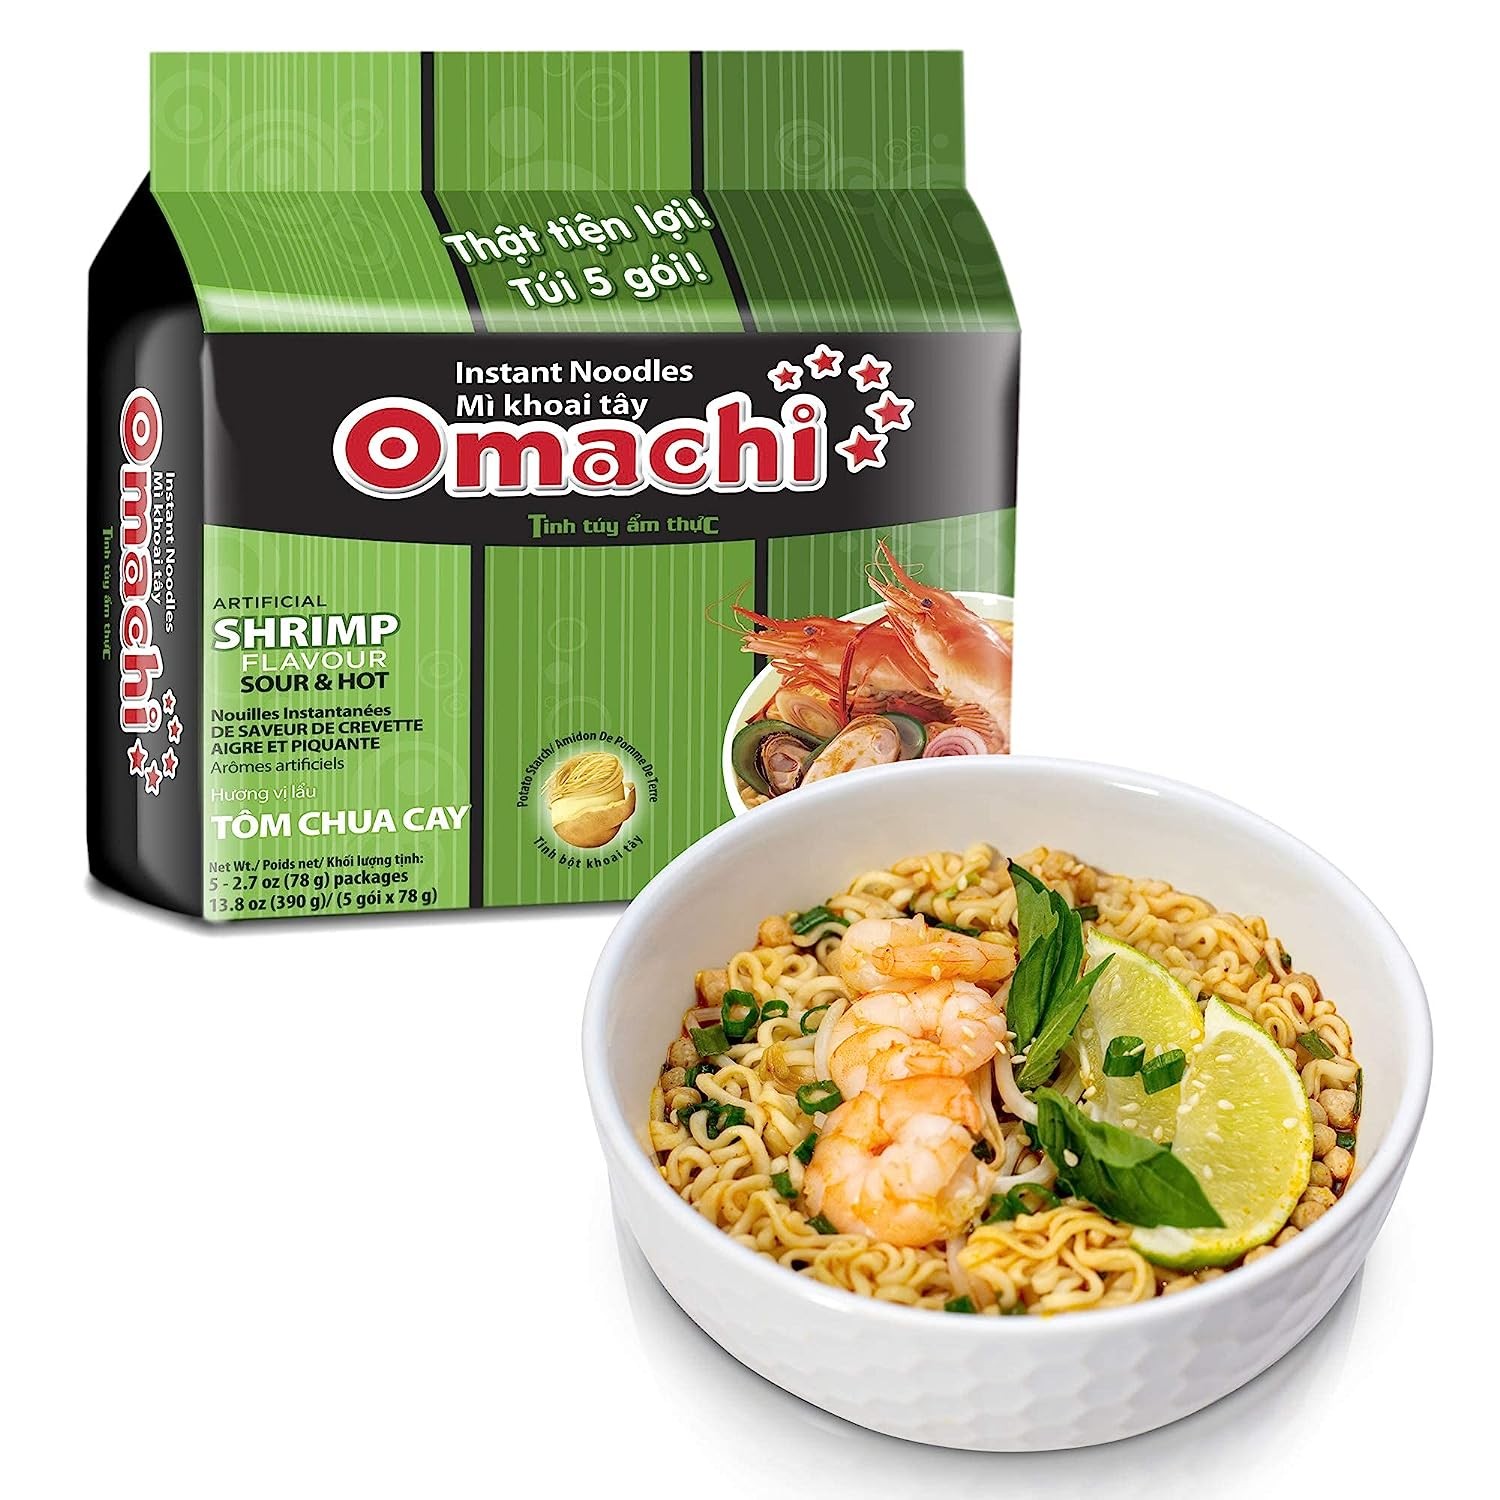 omachi-artificial-shrimp-noodles